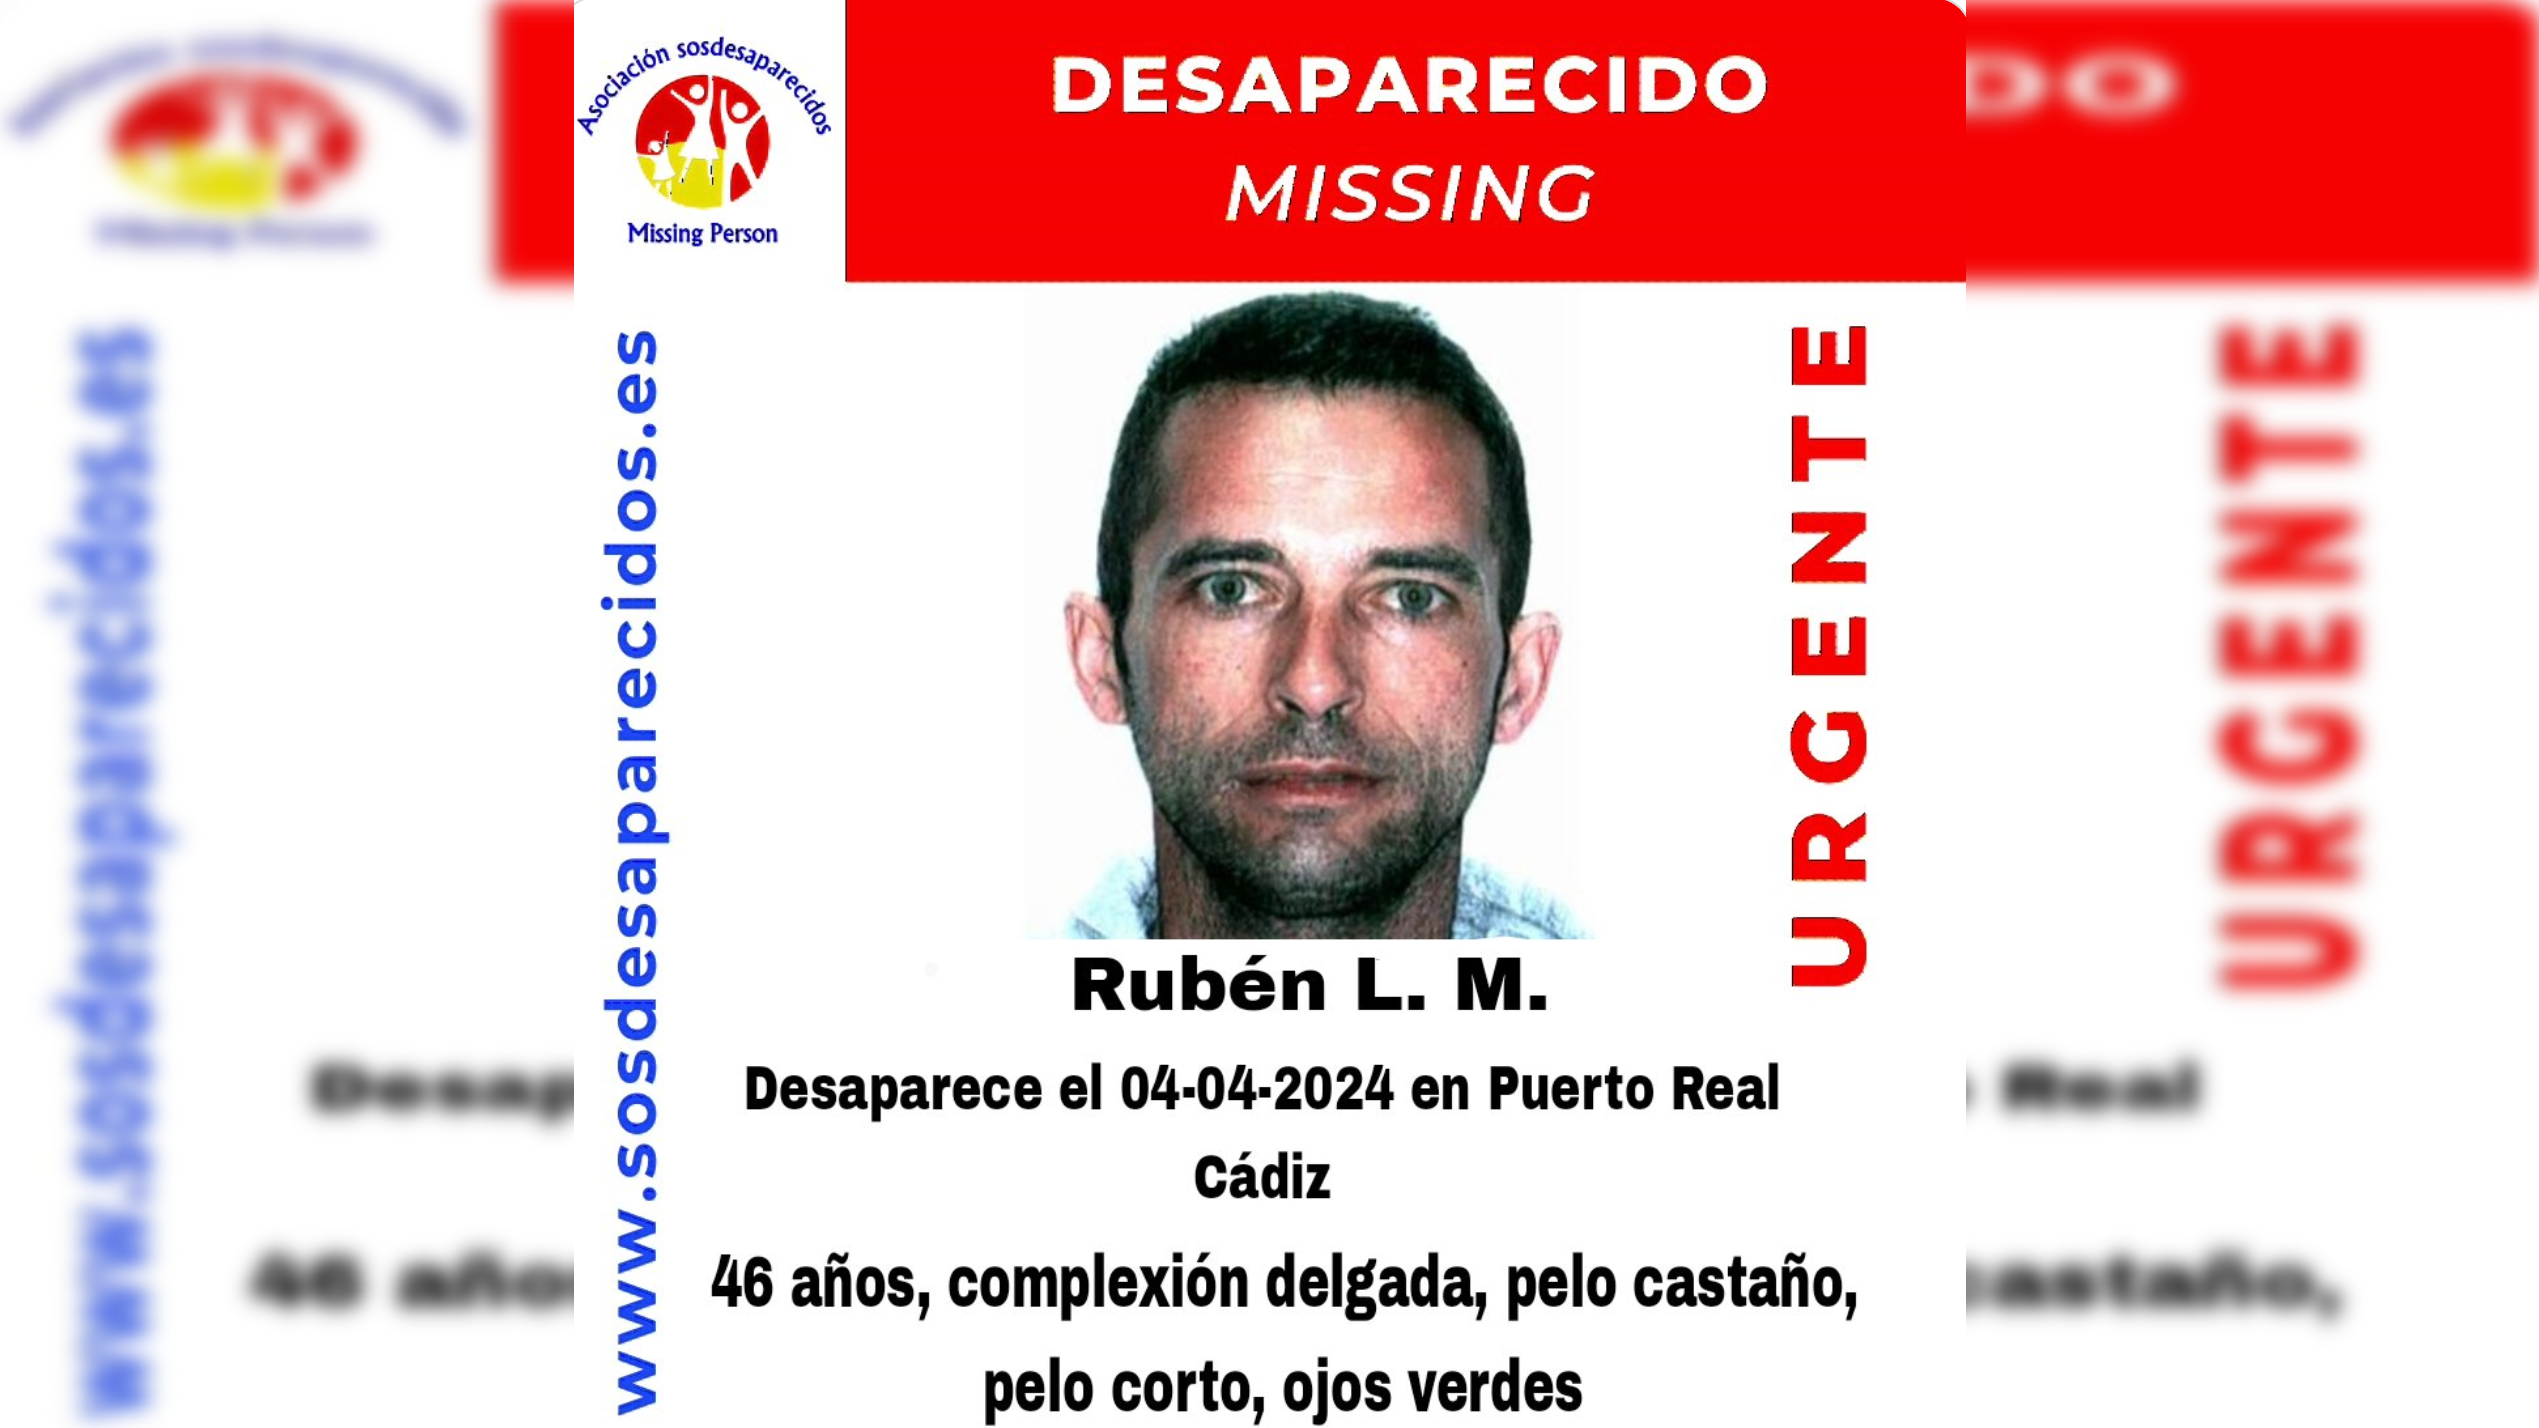 Rubén L. M. desapareció el pasado 4 de abril en Puerto Real.